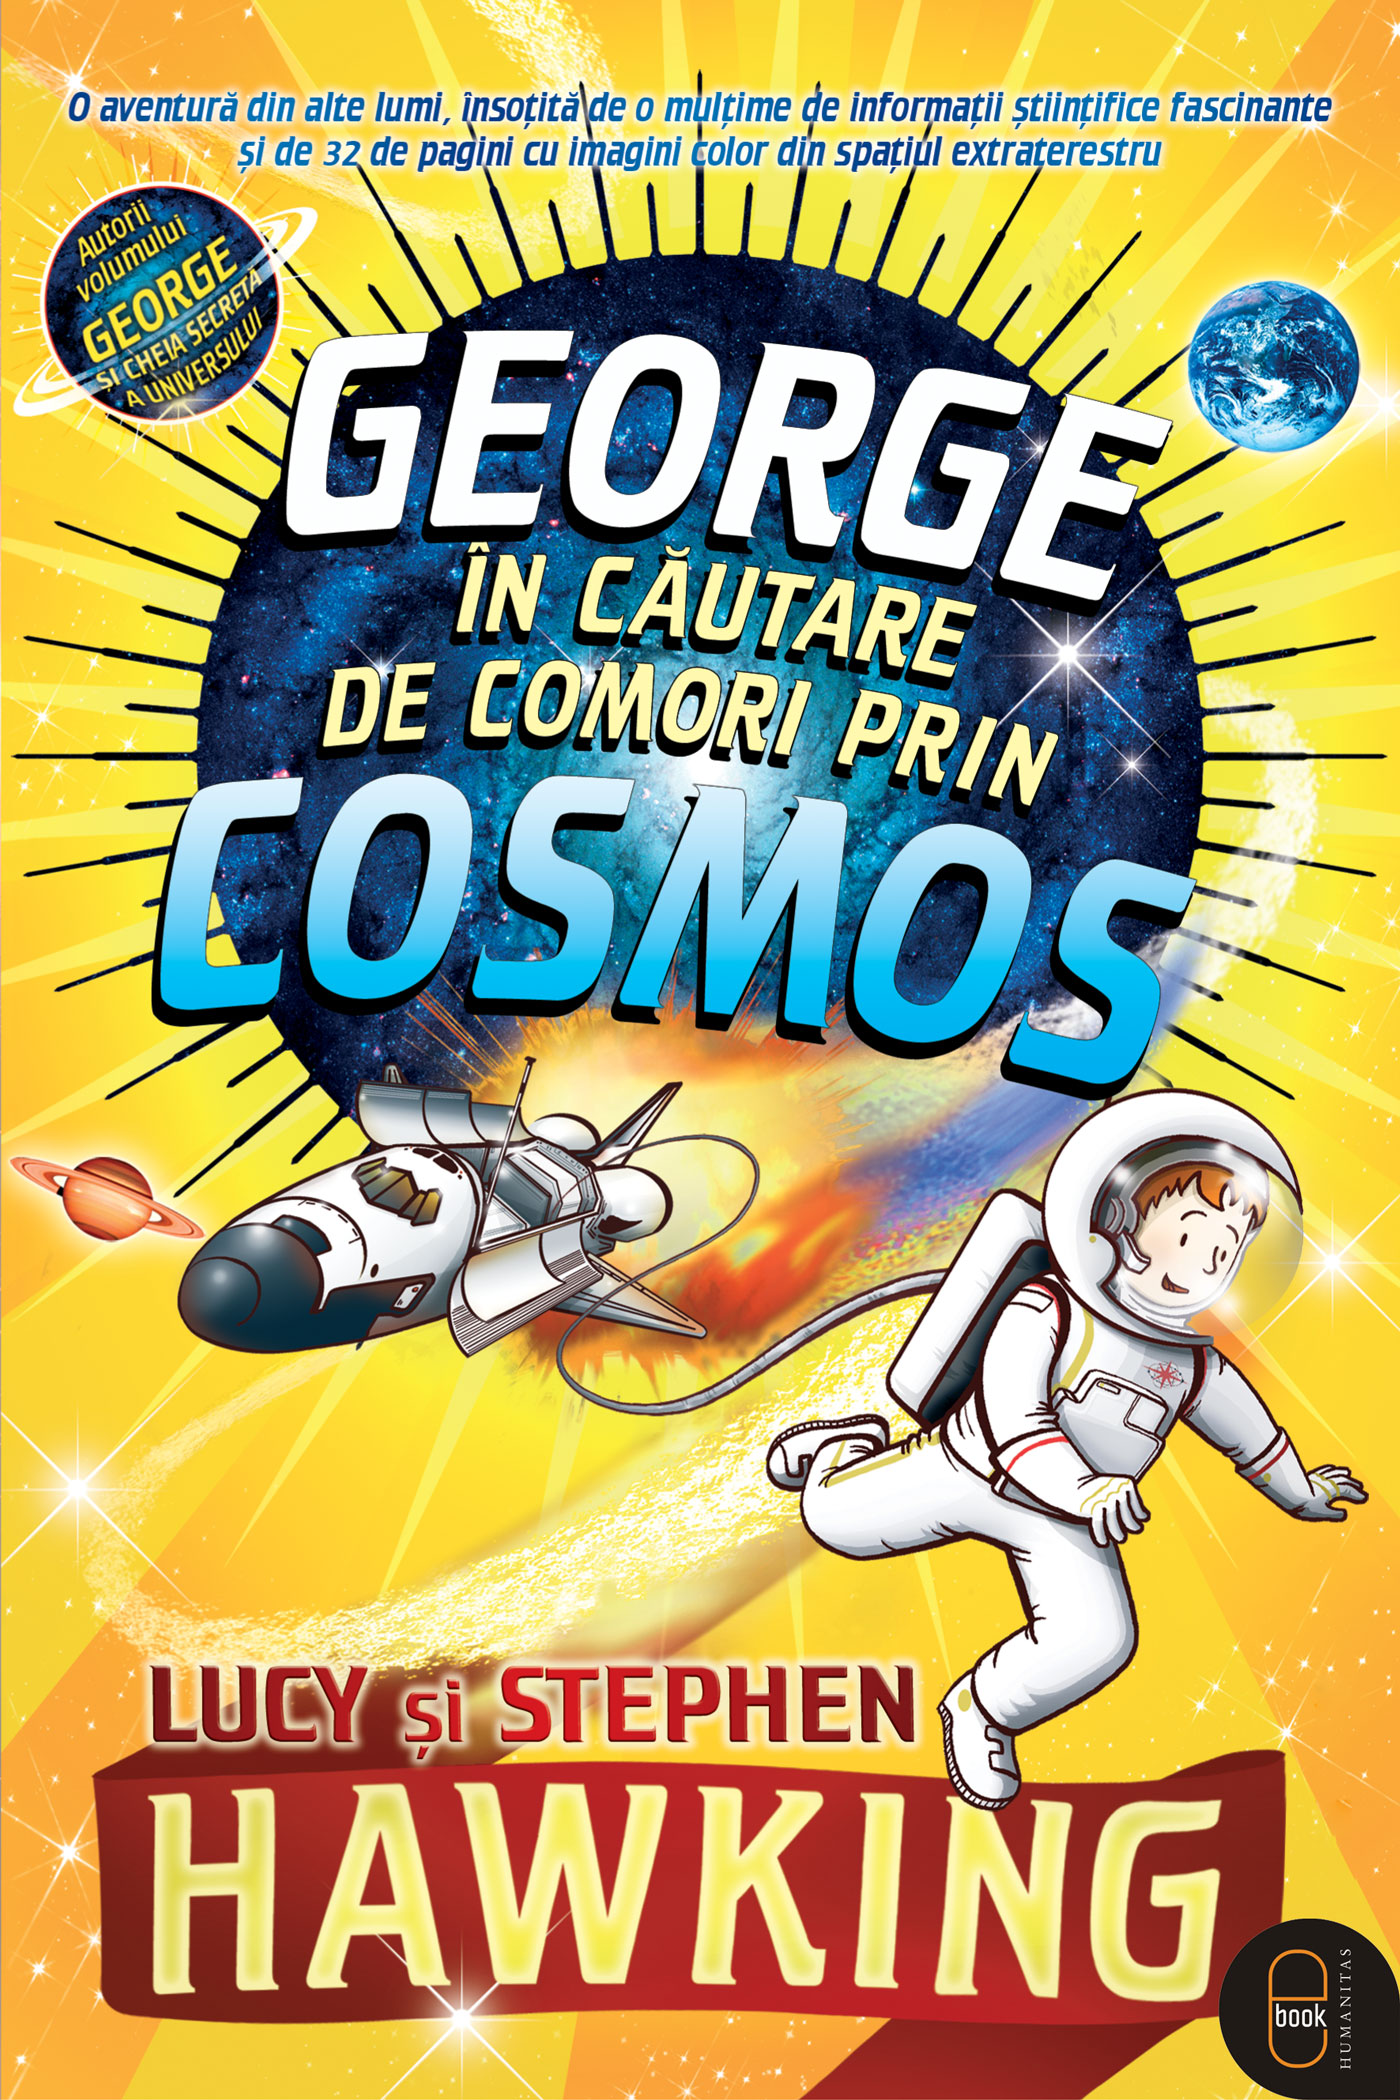 George in cautare de comori prin cosmos (pdf)